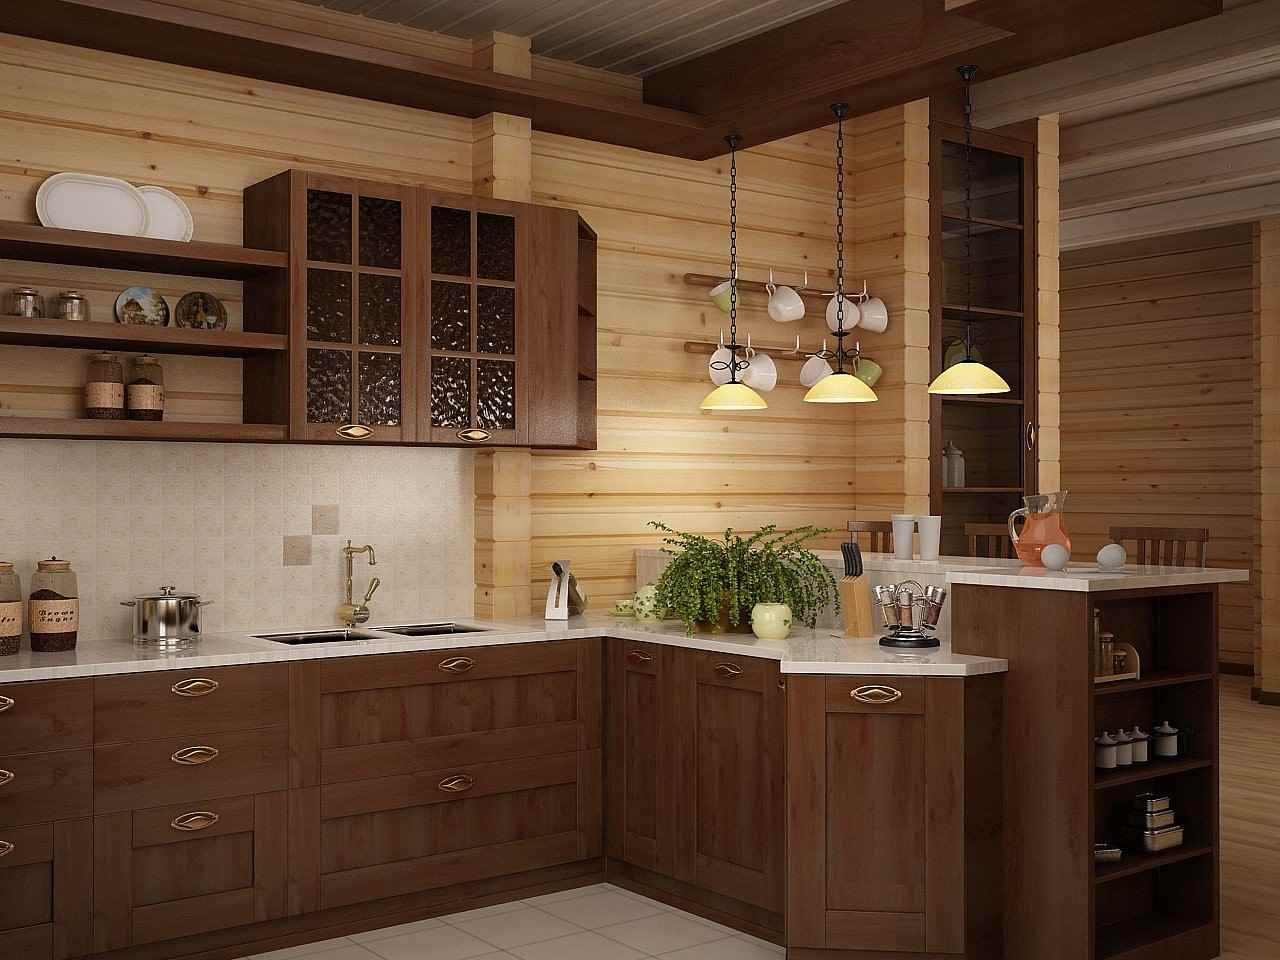 l'idea di un bellissimo arredamento da cucina in una casa di legno